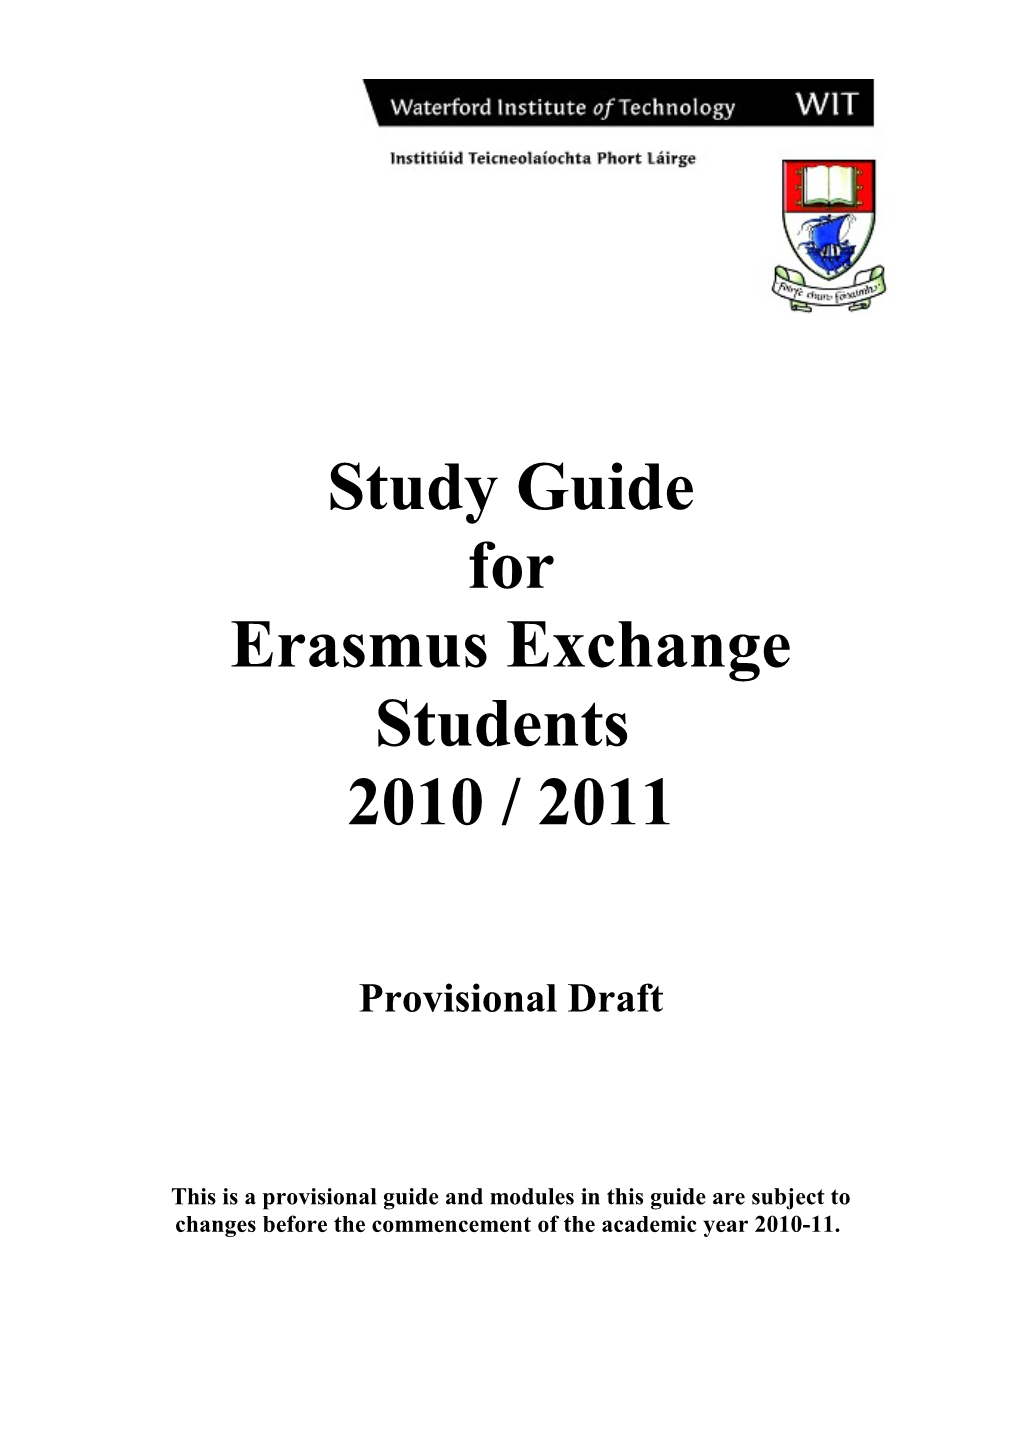 Erasmus Exchange Students